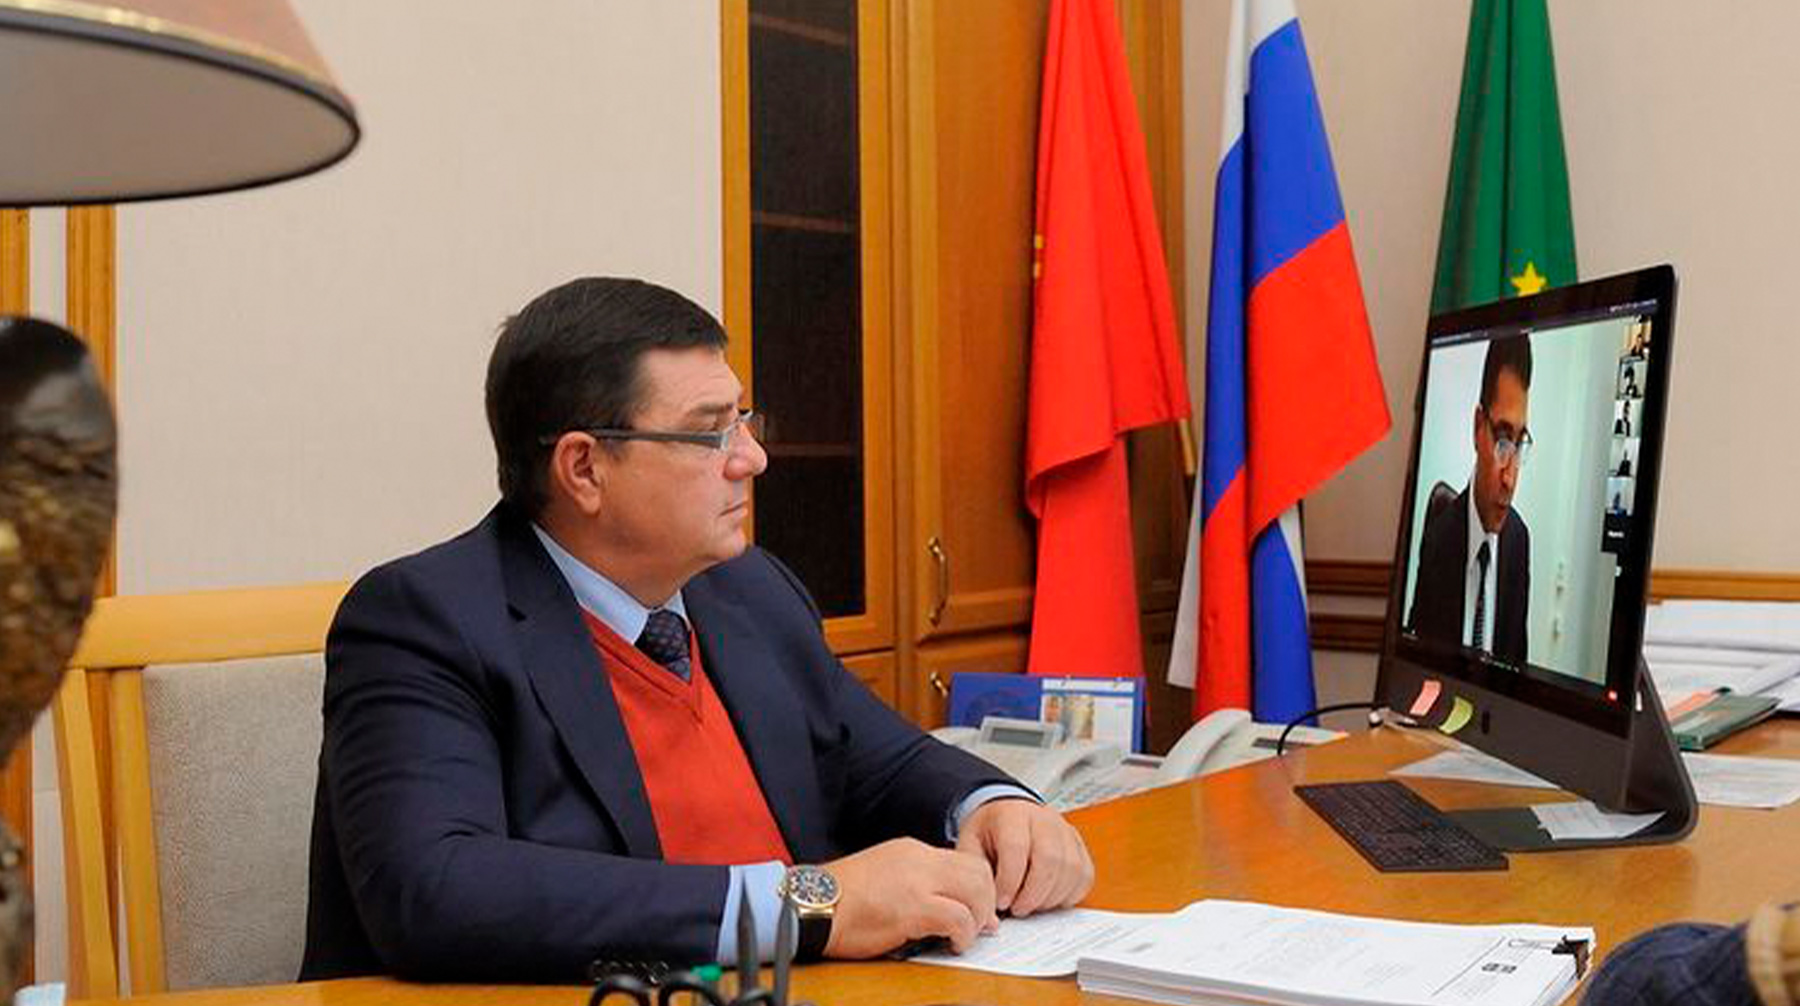 Андрей Гетманов занимал кресло градоначальника с 2017 года Андрей Гетманов